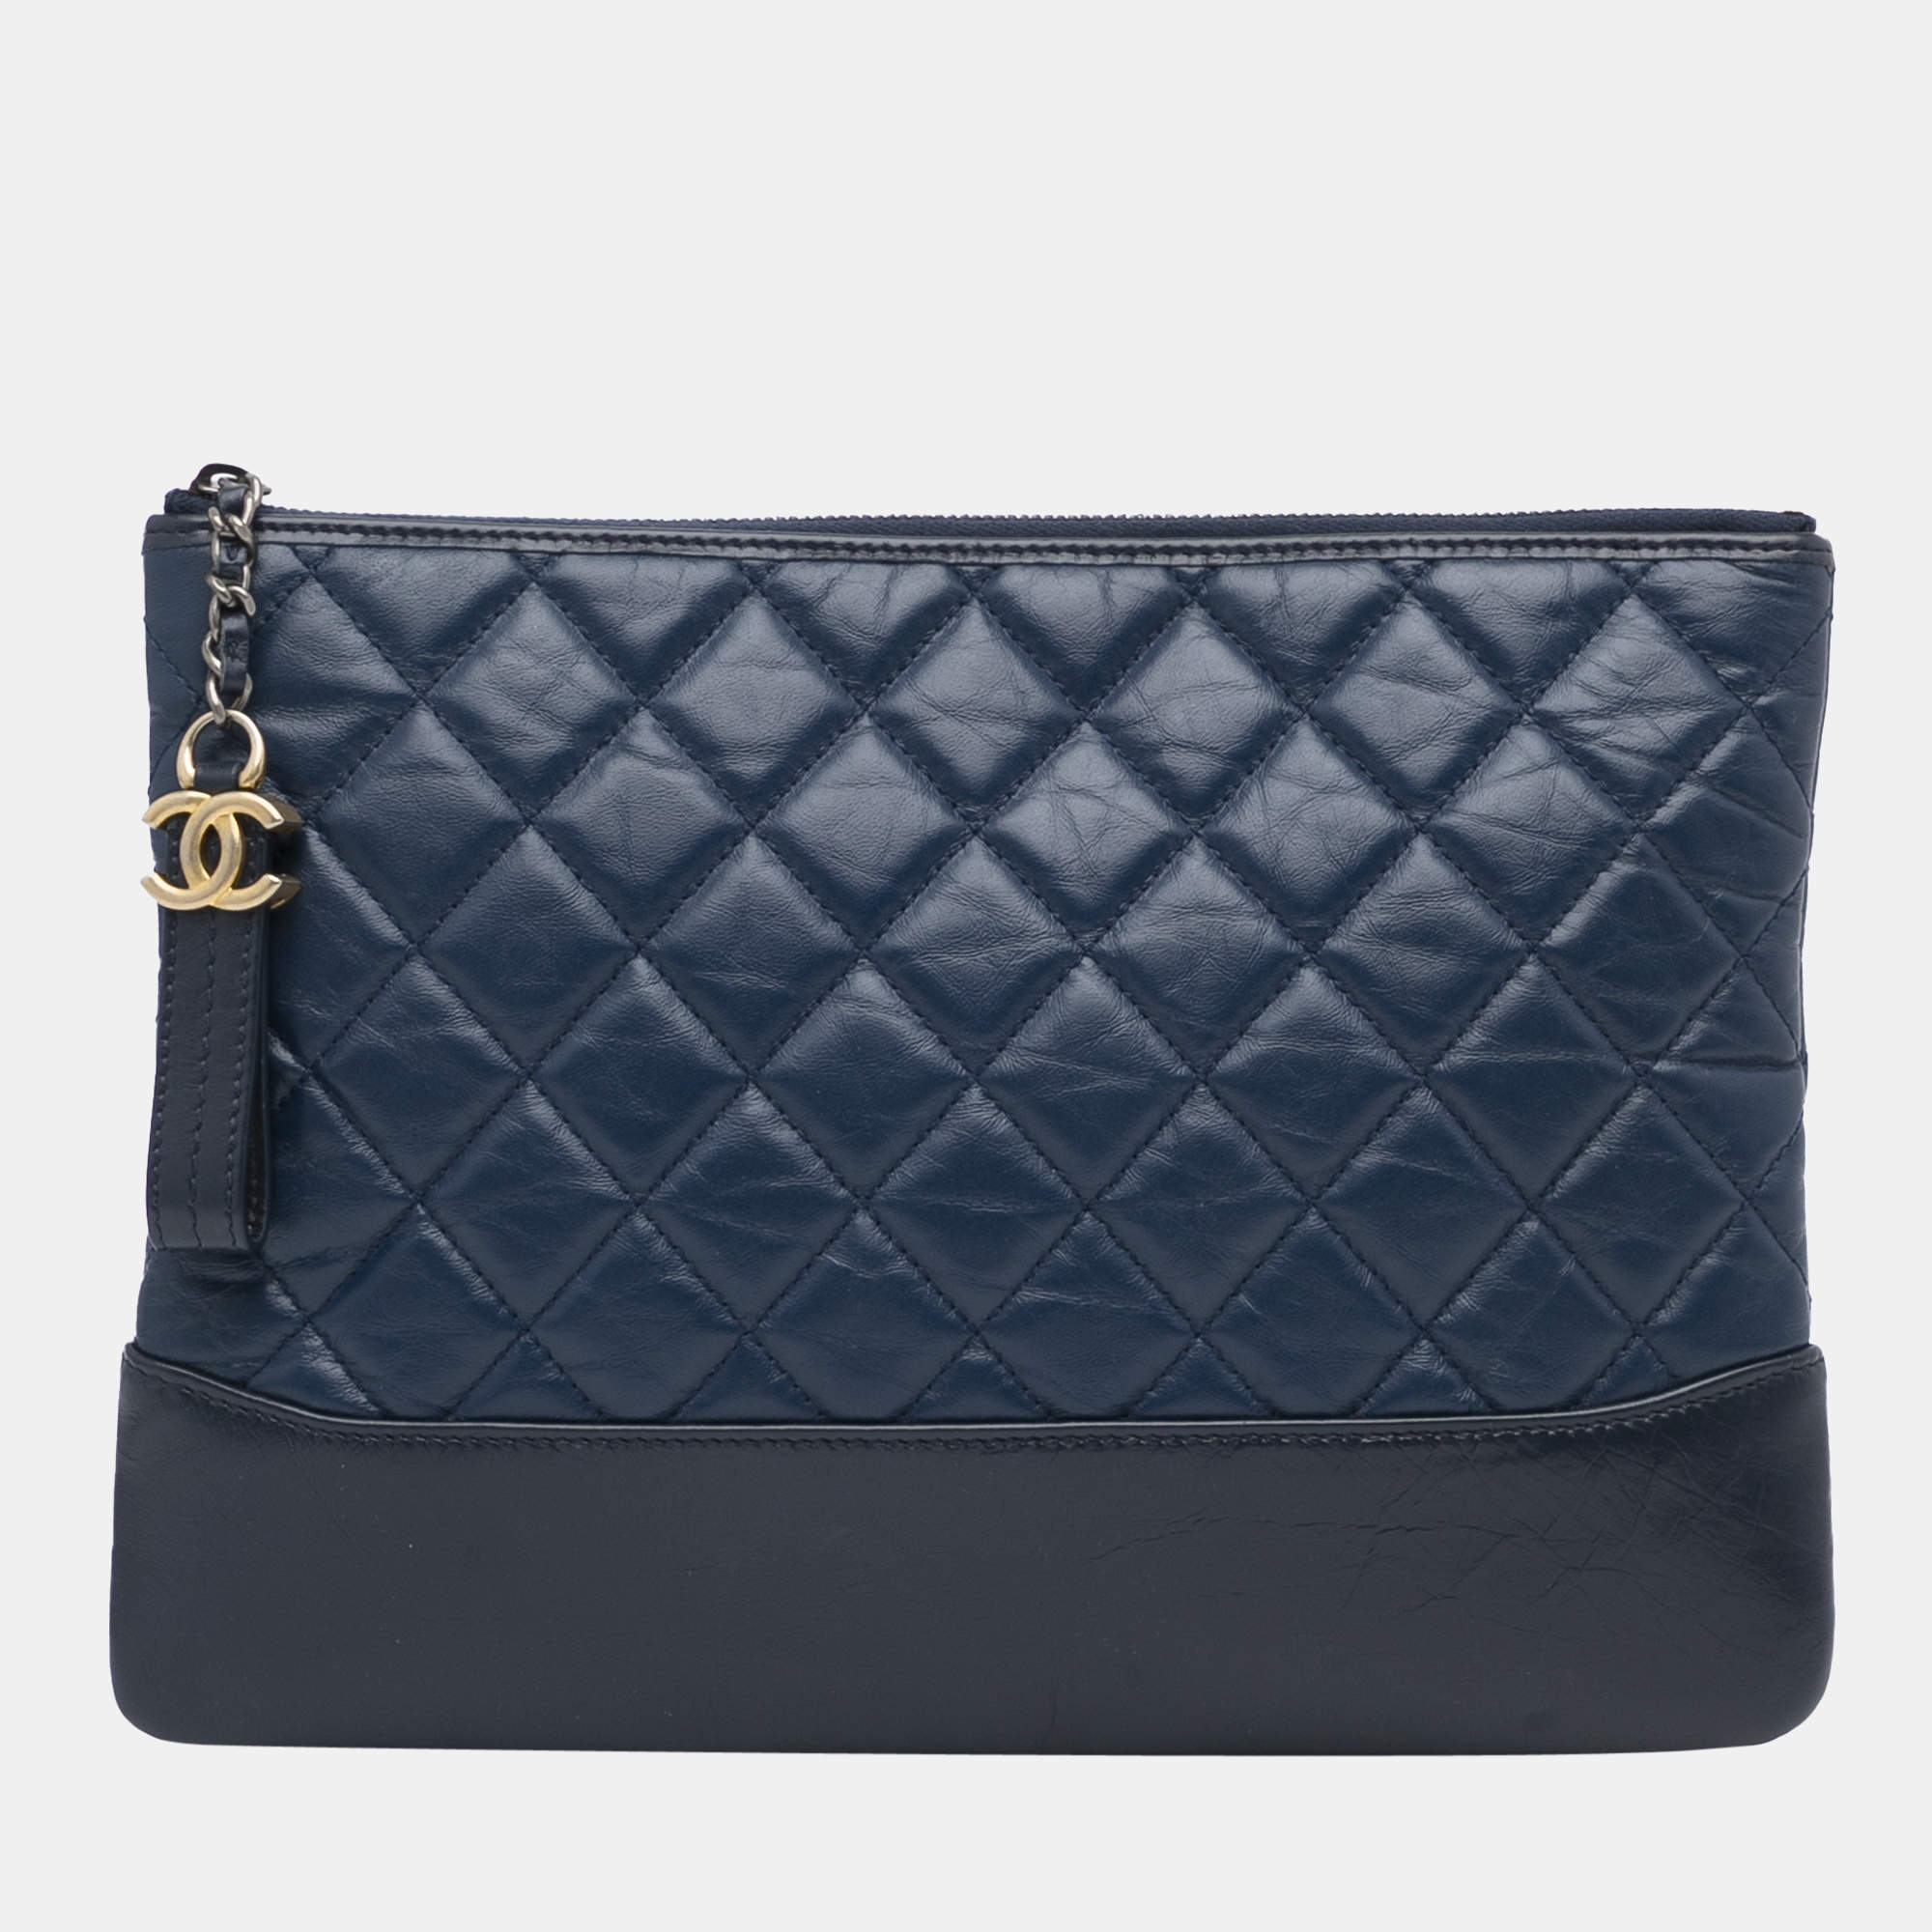 Chanel Blue Gabrielle Clutch Bag Chanel